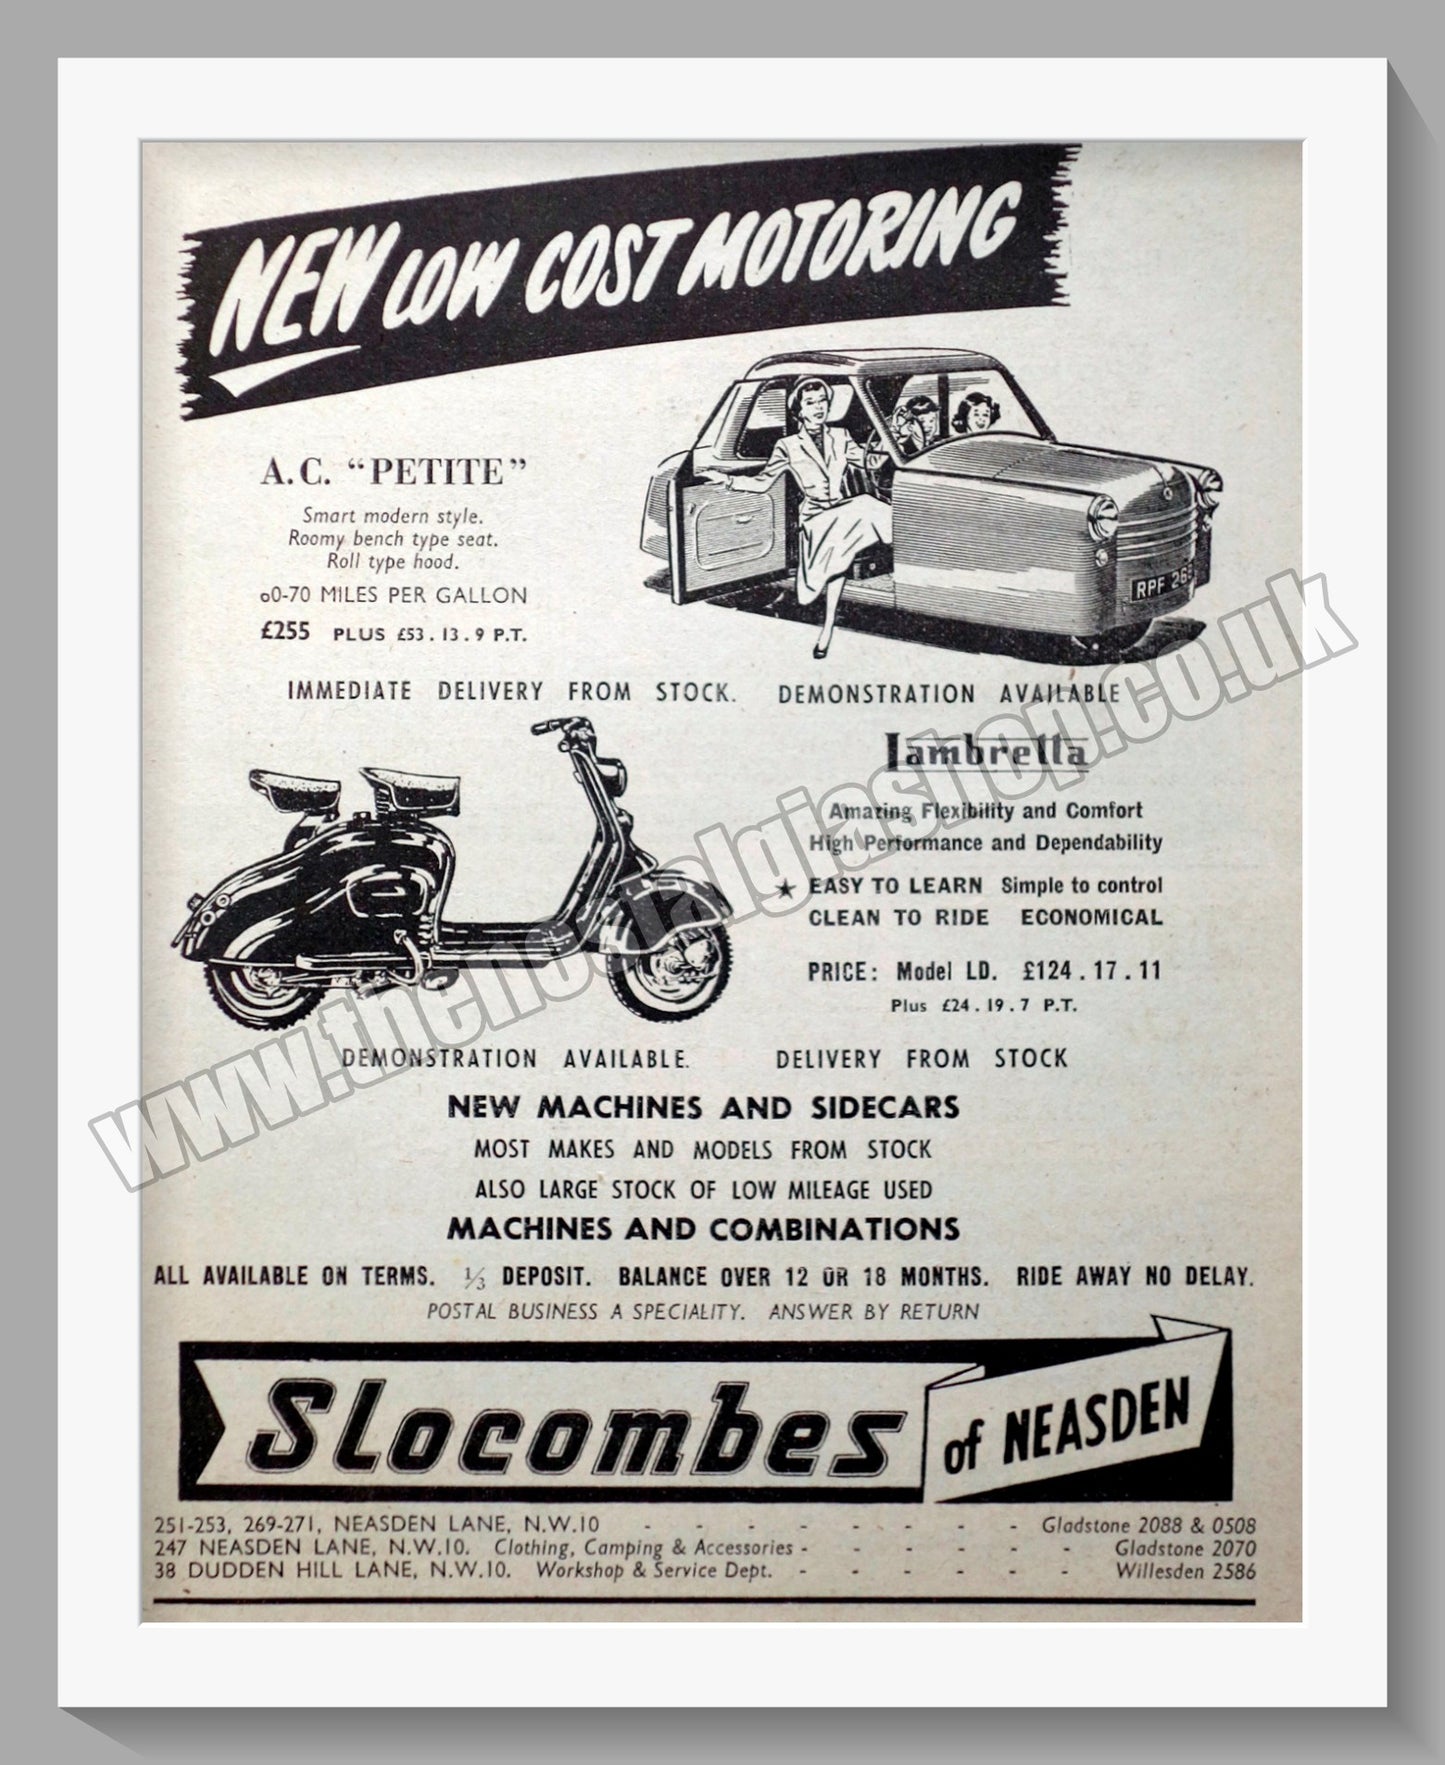 Slocombes of Neasden Motorcycle Dealerships. Original Advert 1954 (ref AD57318)